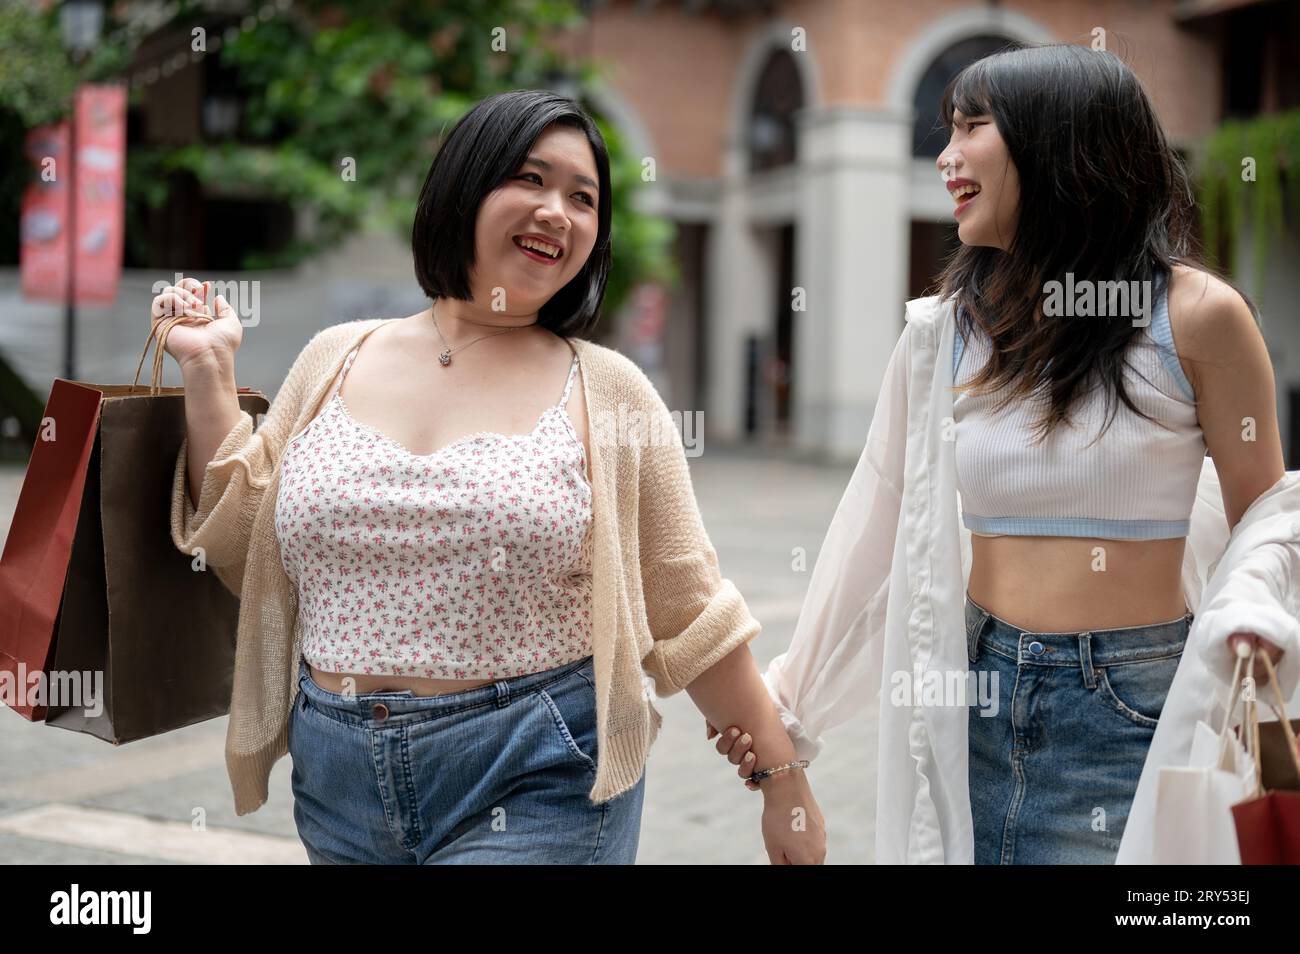 Una donna asiatica allegra e graziosa ama trascorrere il fine settimana con un'amica in città e fare shopping insieme. Foto Stock